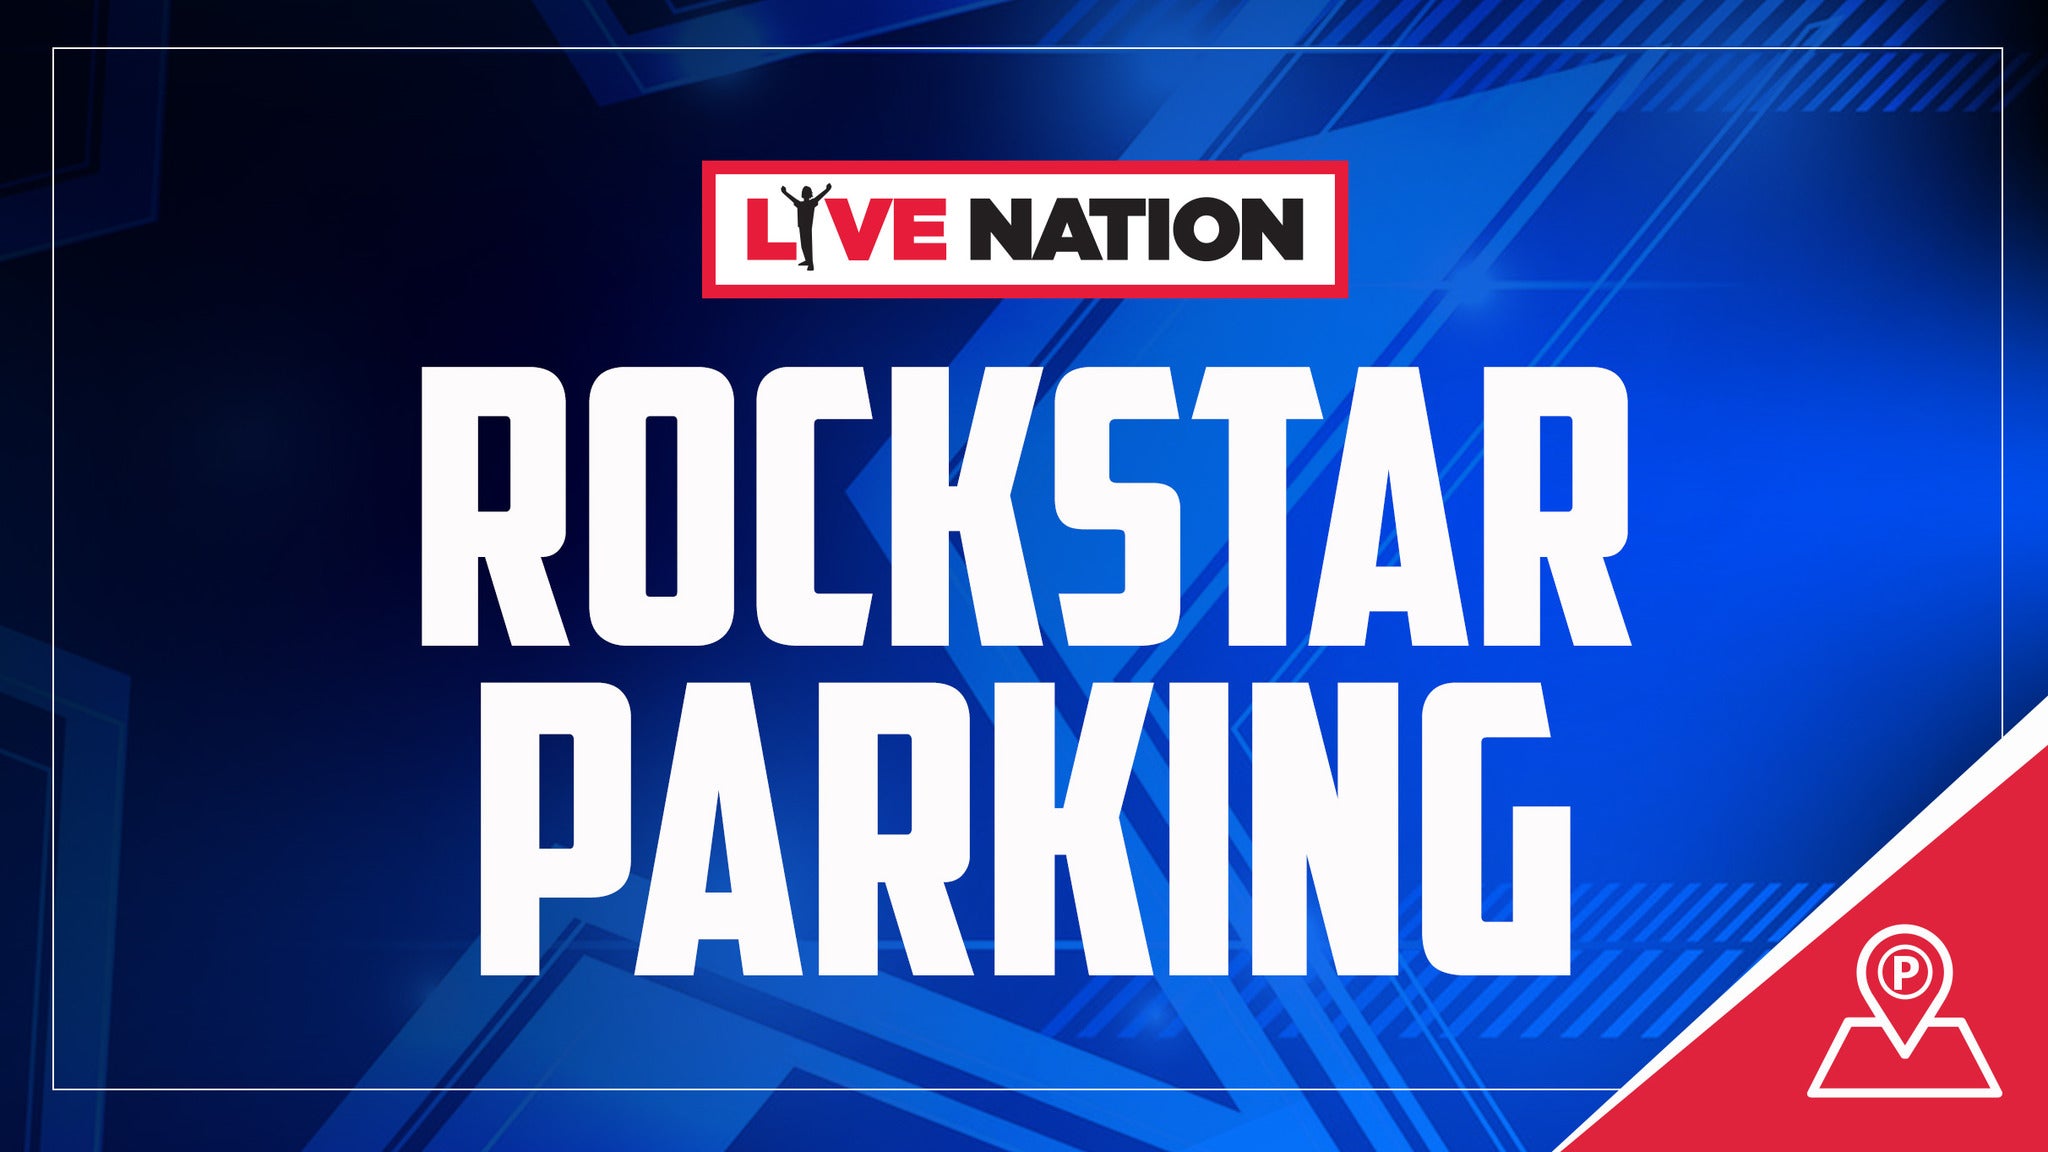 Live Nation Rockstar Parking presale information on freepresalepasswords.com